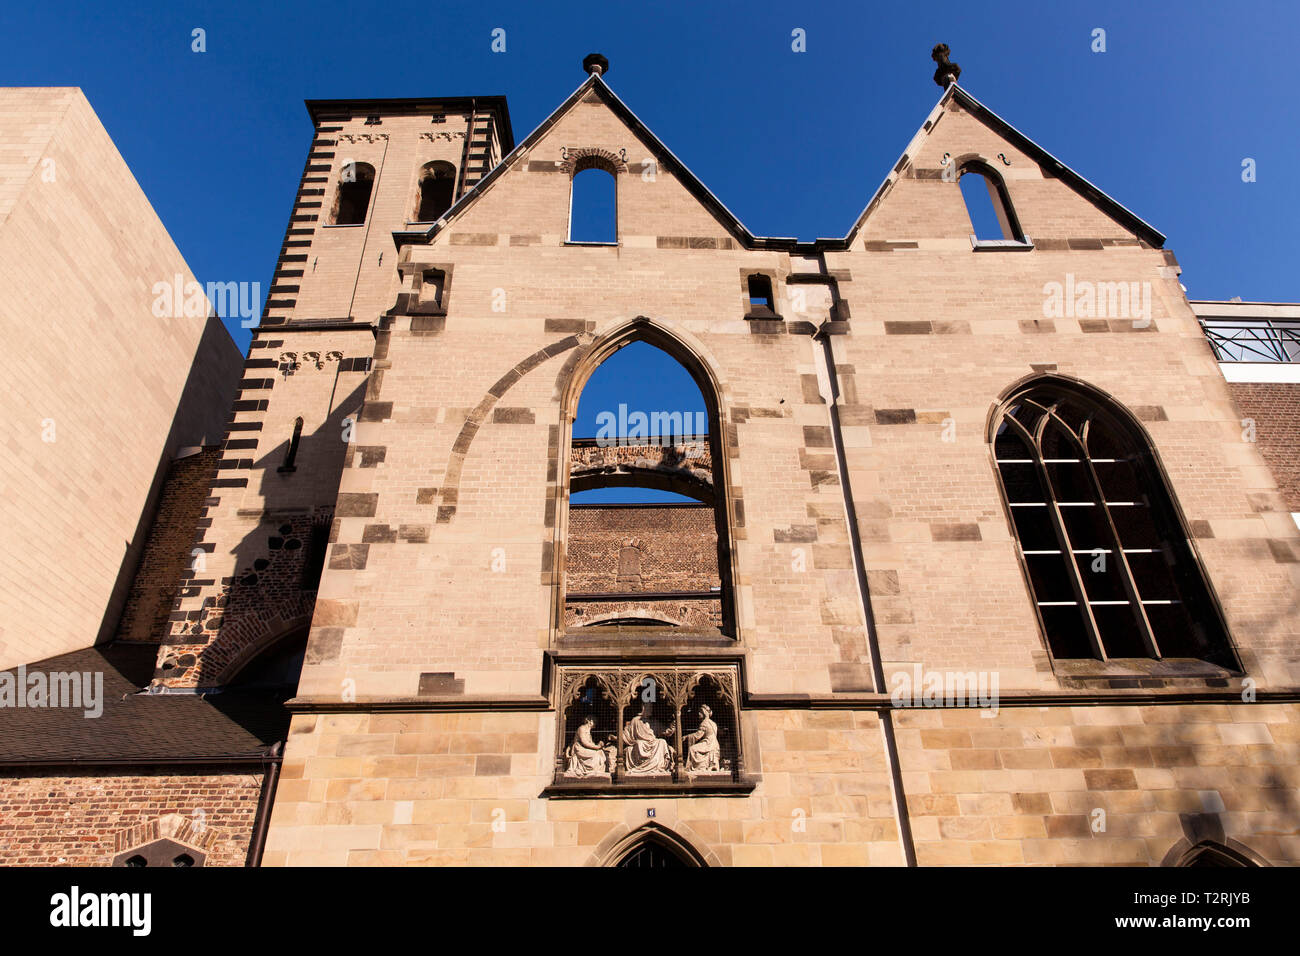 La ruine de l'église Saint Alban dans la partie ancienne de la ville, Cologne, Allemagne. die Kirchenruine Alt St. Alban Köln, Köln, Deutschland. Banque D'Images